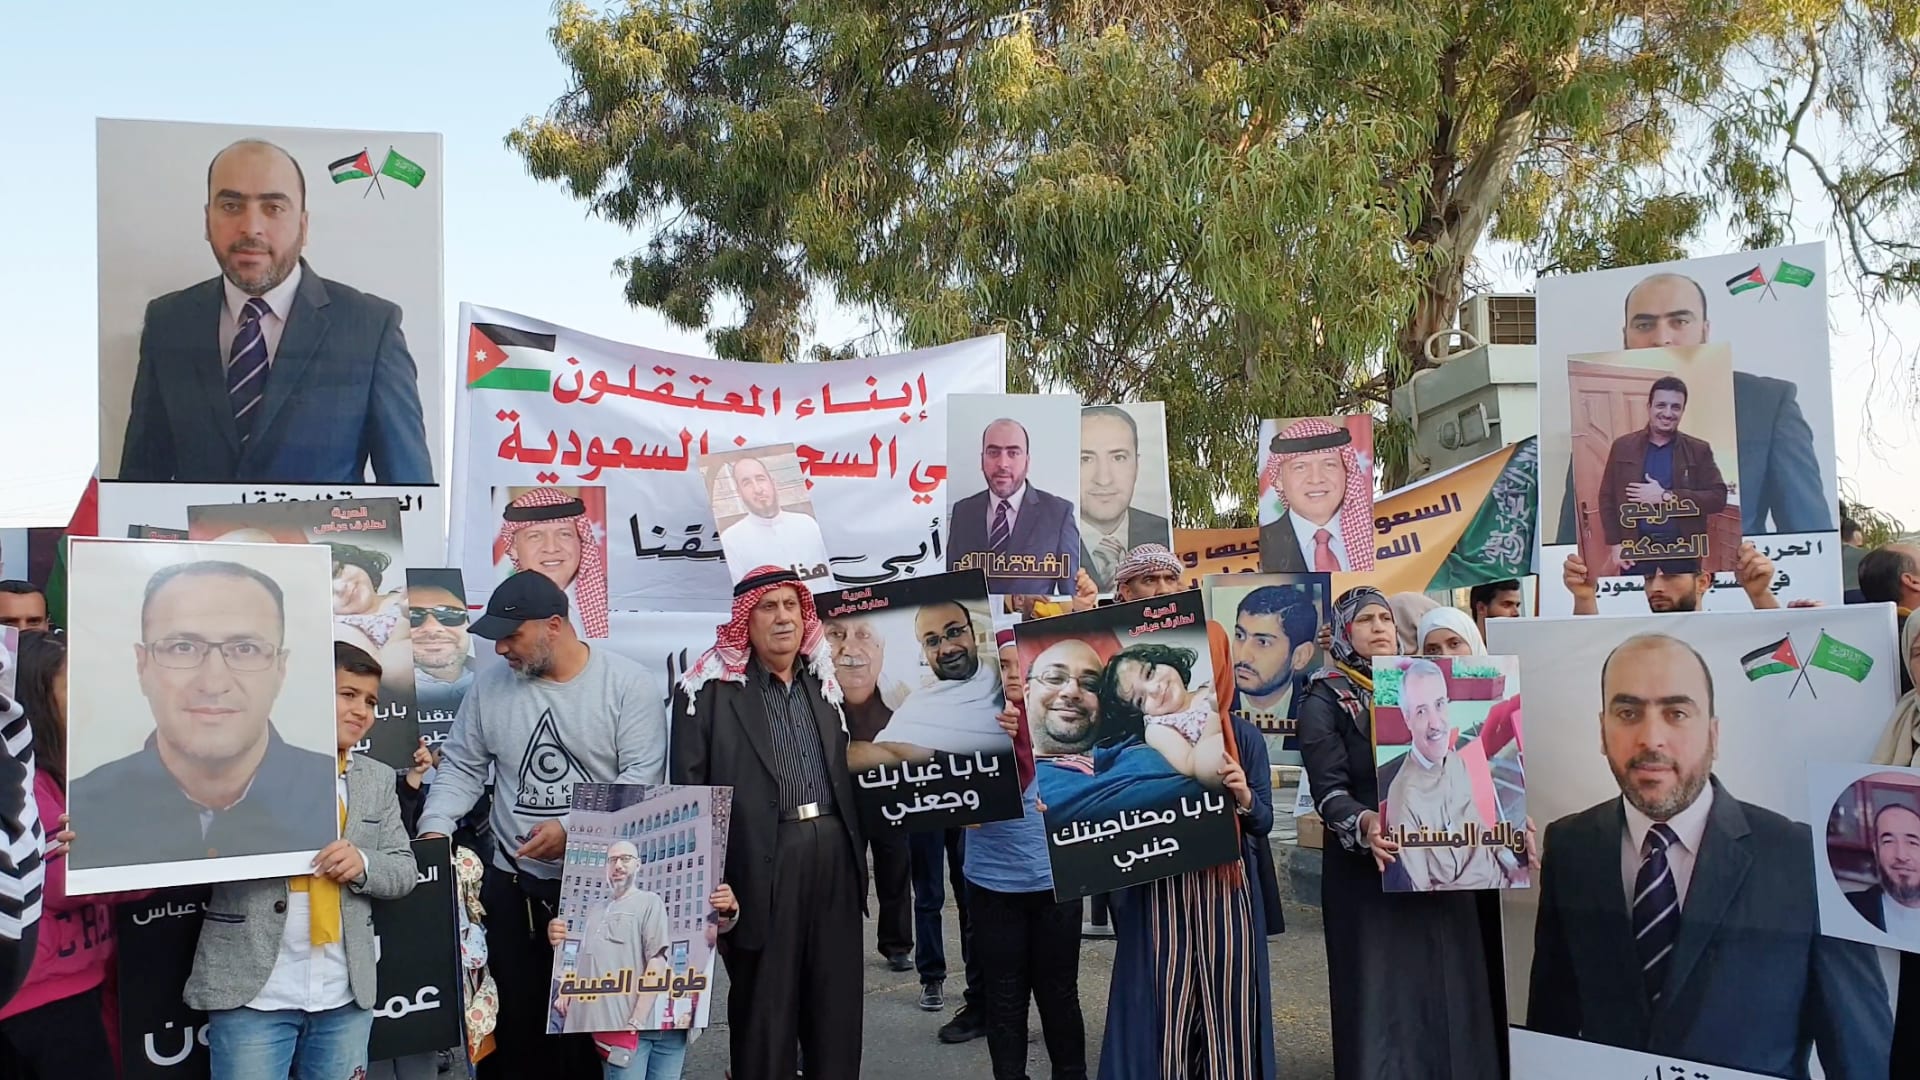 وقفة سلمية لأهالي محتجزين أردنيين في السعودية أمام خارجية بلادهم